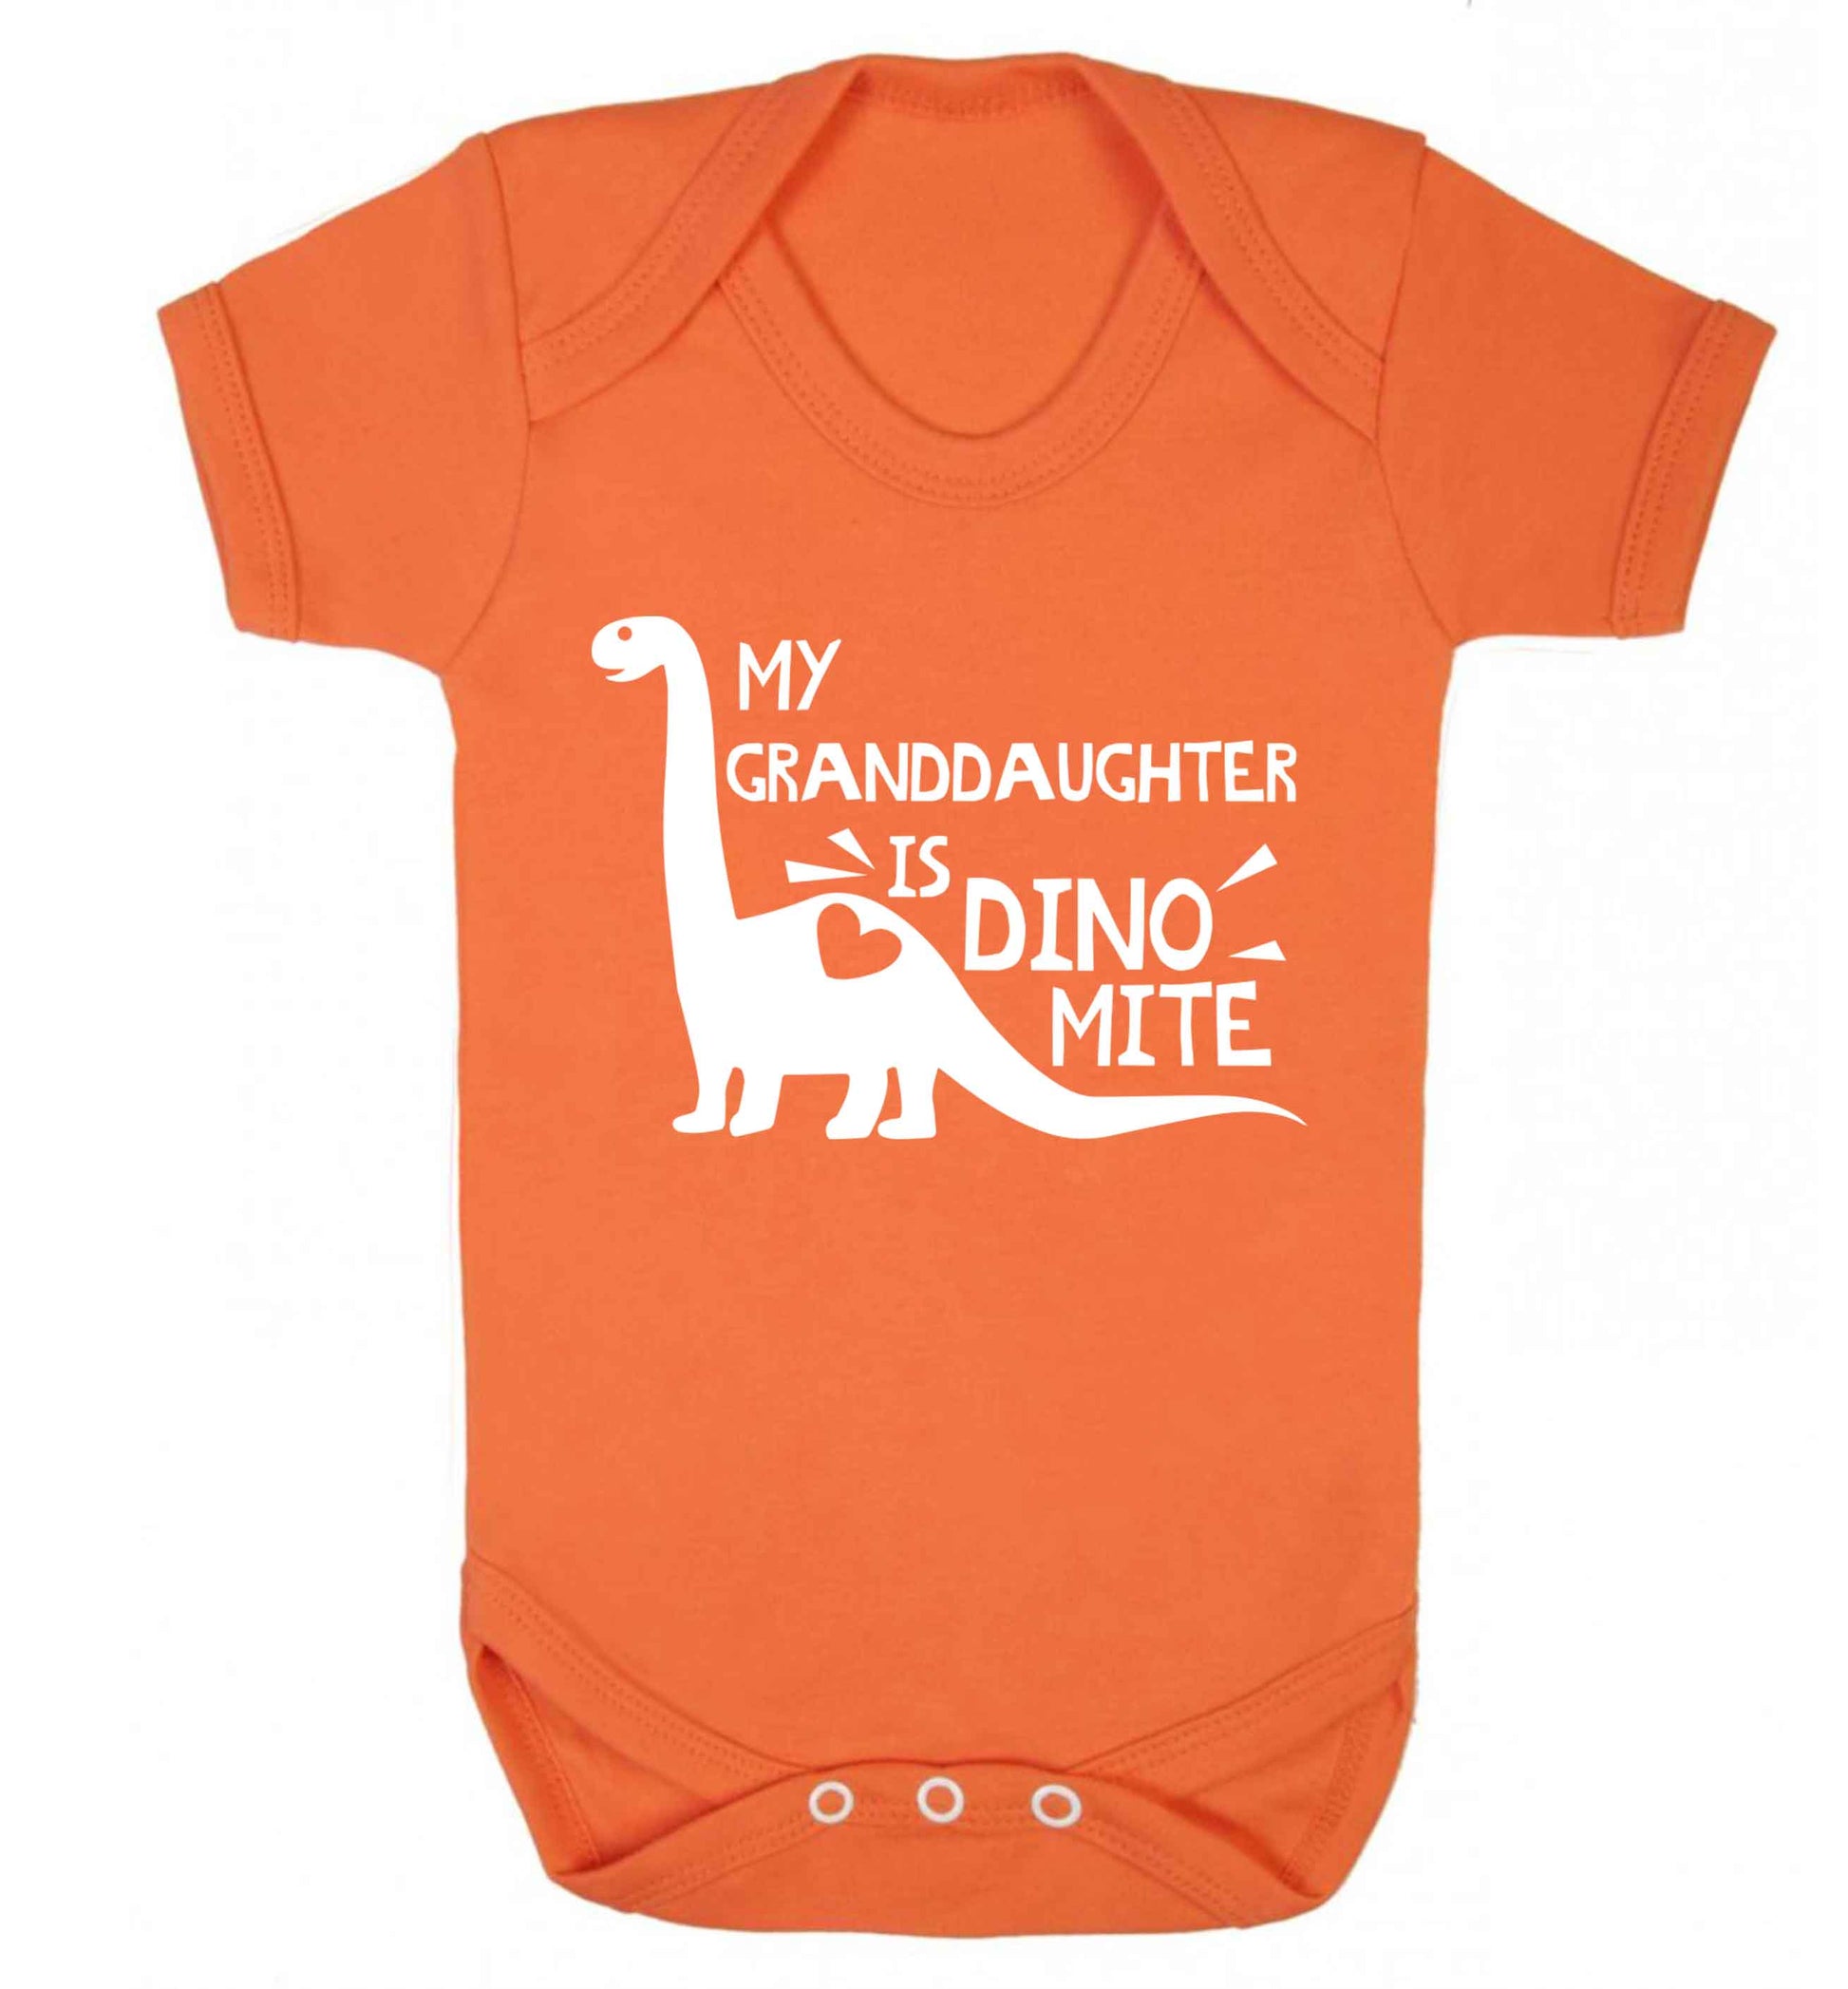 My granddaughter is dinomite! Baby Vest orange 18-24 months